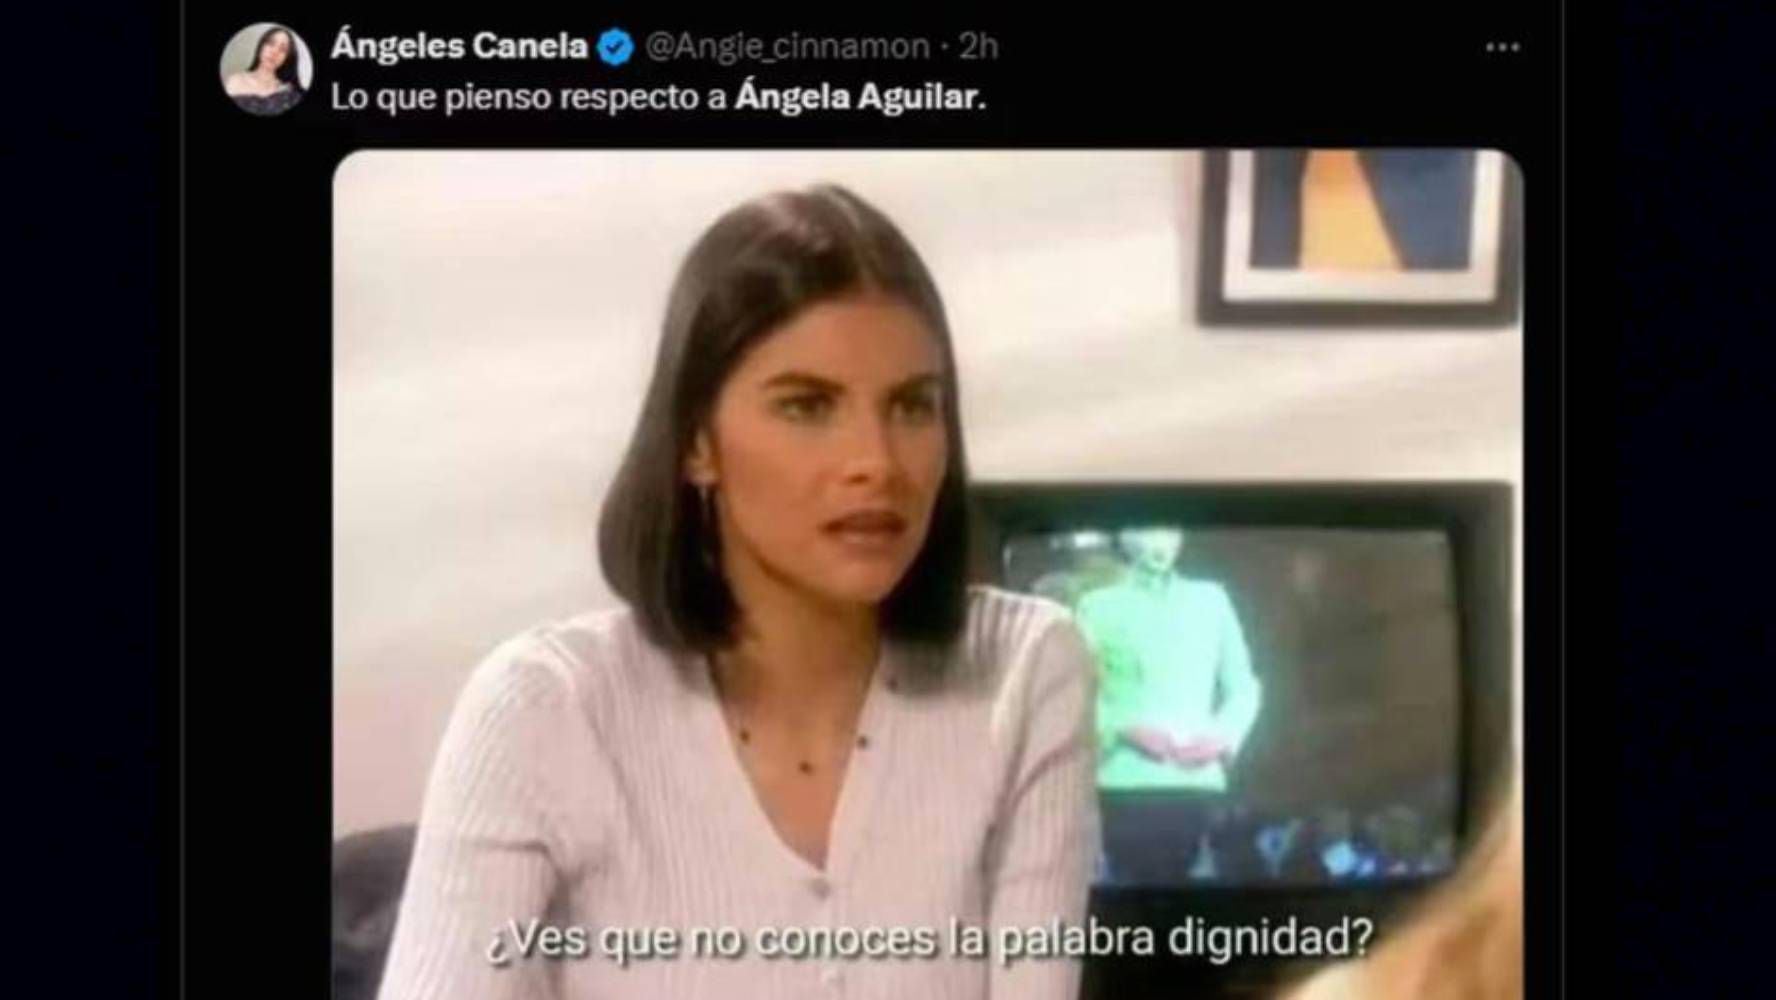 Los memes de la boda de Ángela Aguilar y Christian Nodal siguen apareciendo en redes. (Foto: Especial).